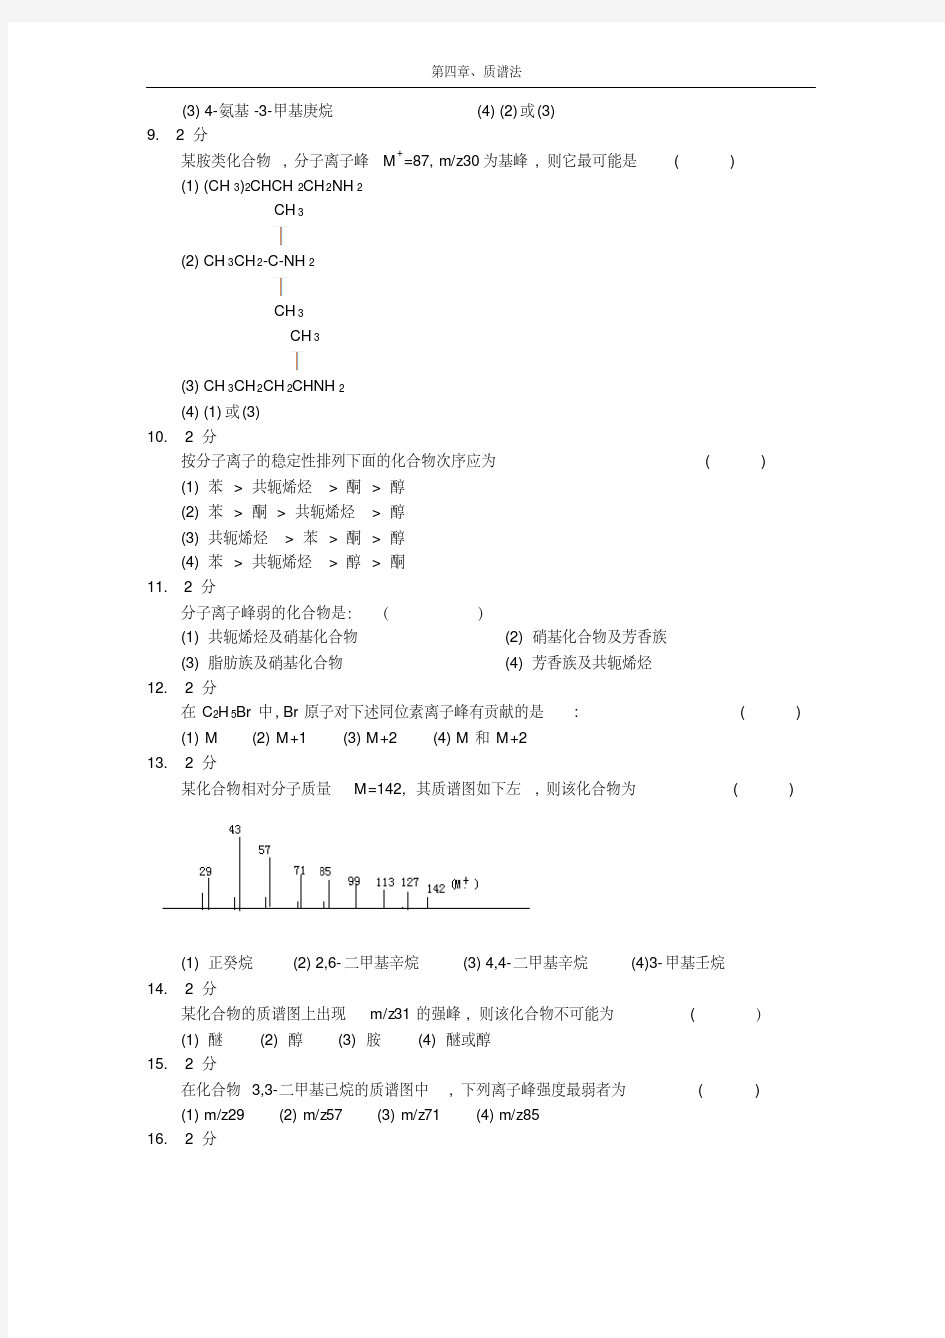 质谱法习题集及答案-精选.pdf